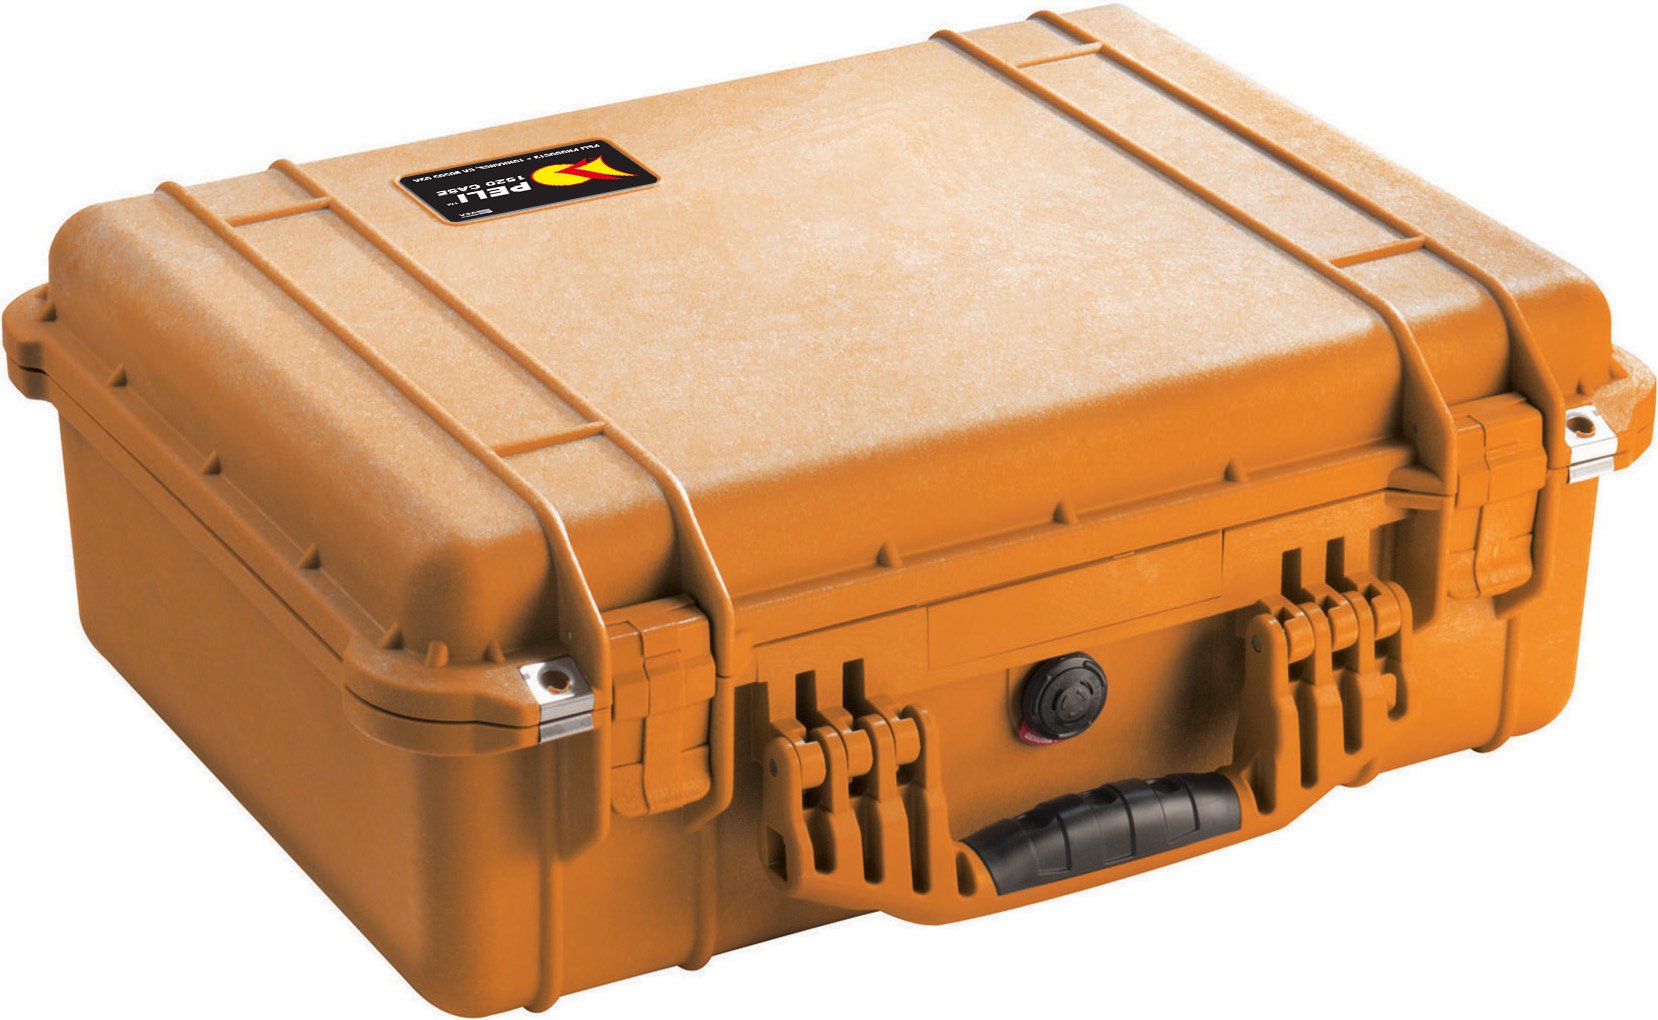 PELI 1520 Widerstandsfähiger Koffer für Spiegelreflexkamera und Zubehör, IP67 Wasser- und Staubdicht, 24L Volumen, Ohne Schaum, Orange